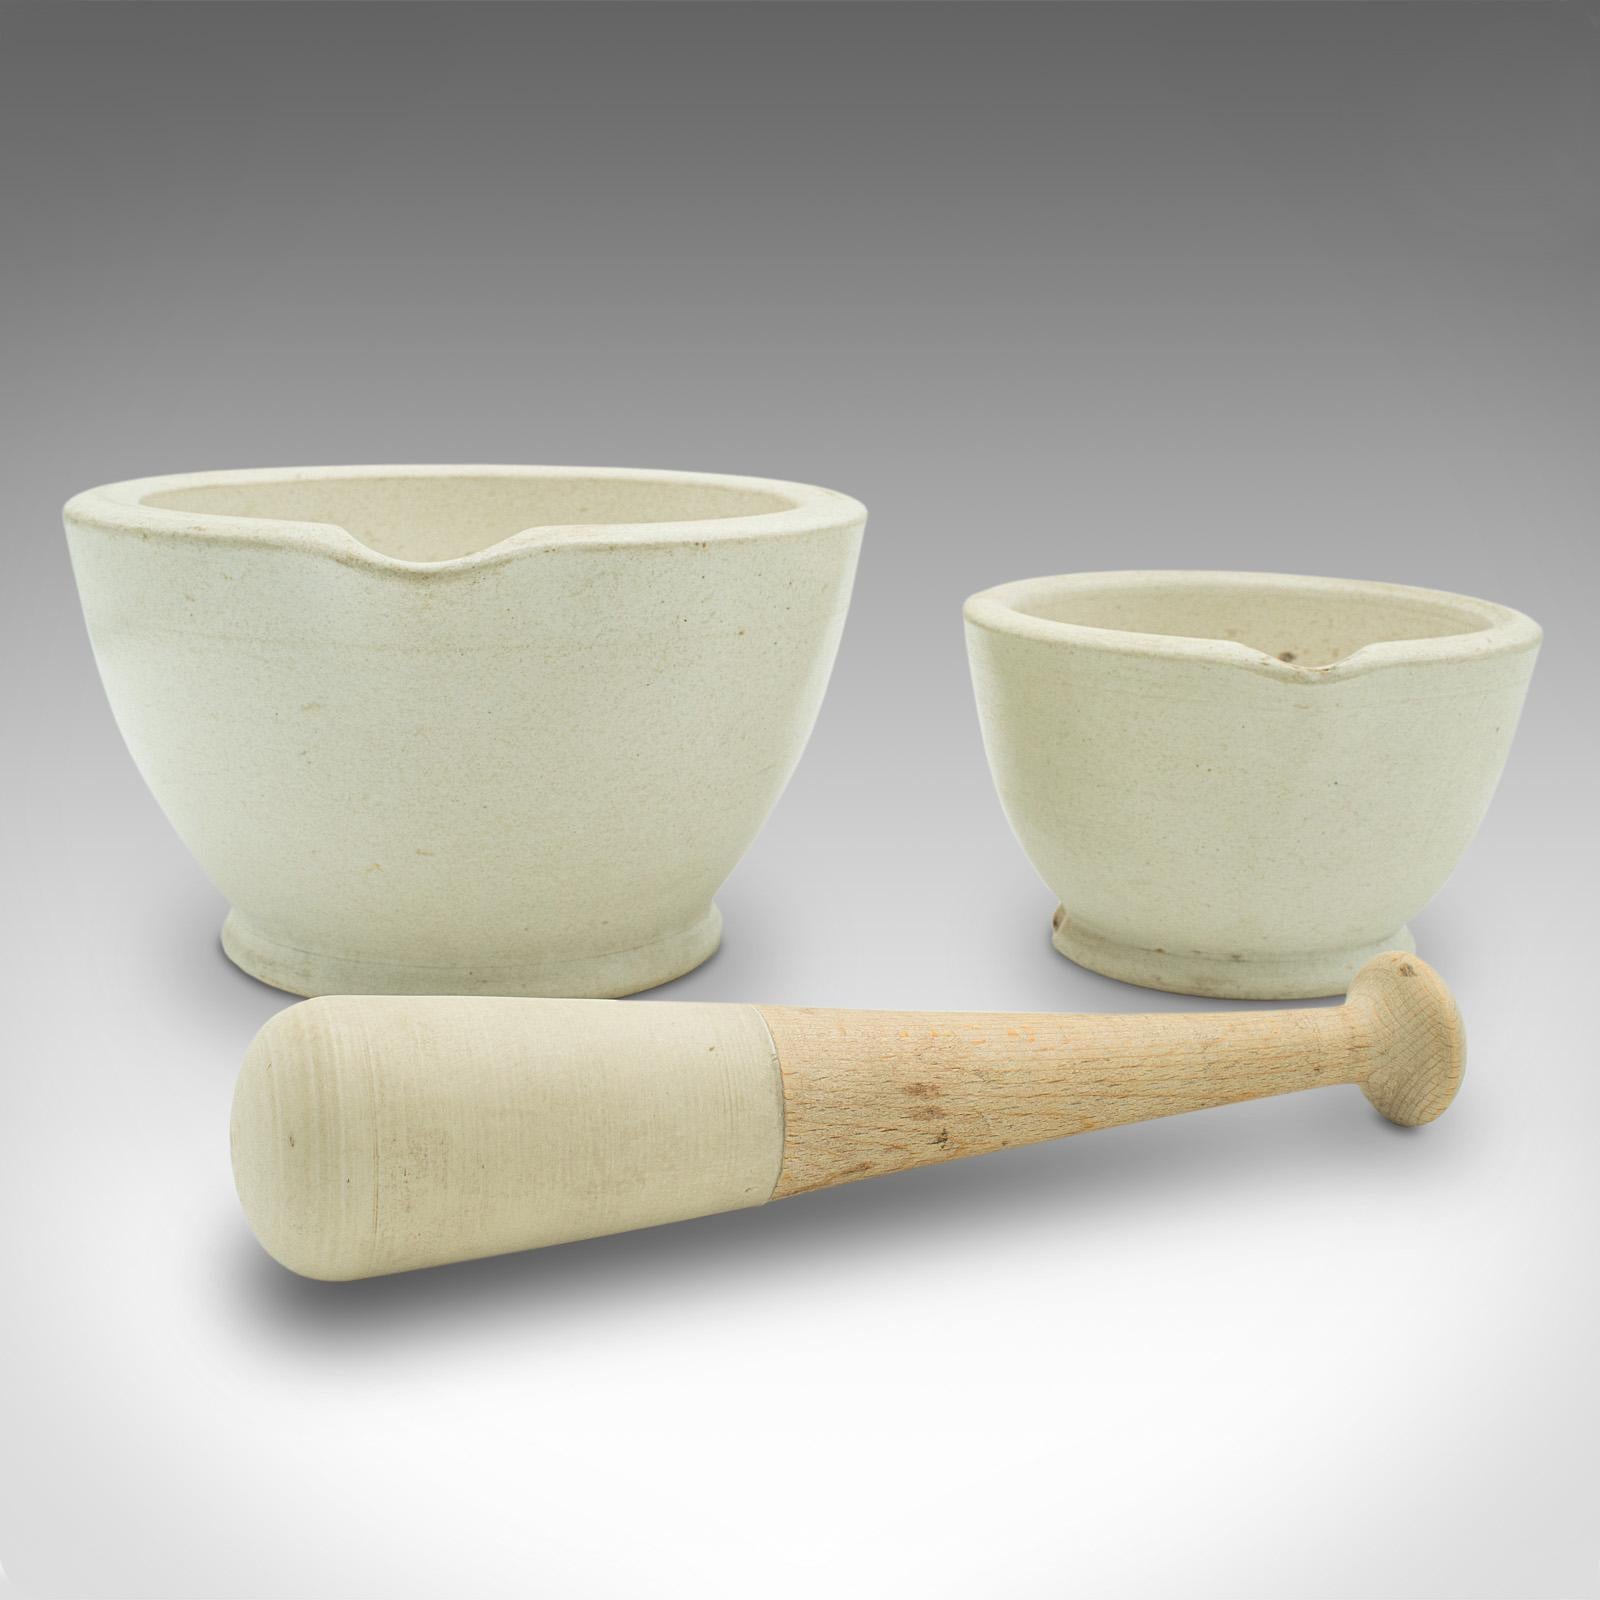 Dies ist ein kleines antikes Mörser- und Stößel-Duo. Ein englisches Koch- oder Apothekerhilfsmittel aus Keramik und Buche, aus der spätviktorianischen Zeit, um 1890.

Erfreulich substanziell mit klassischer Küchenanmutung
Mit wünschenswerter